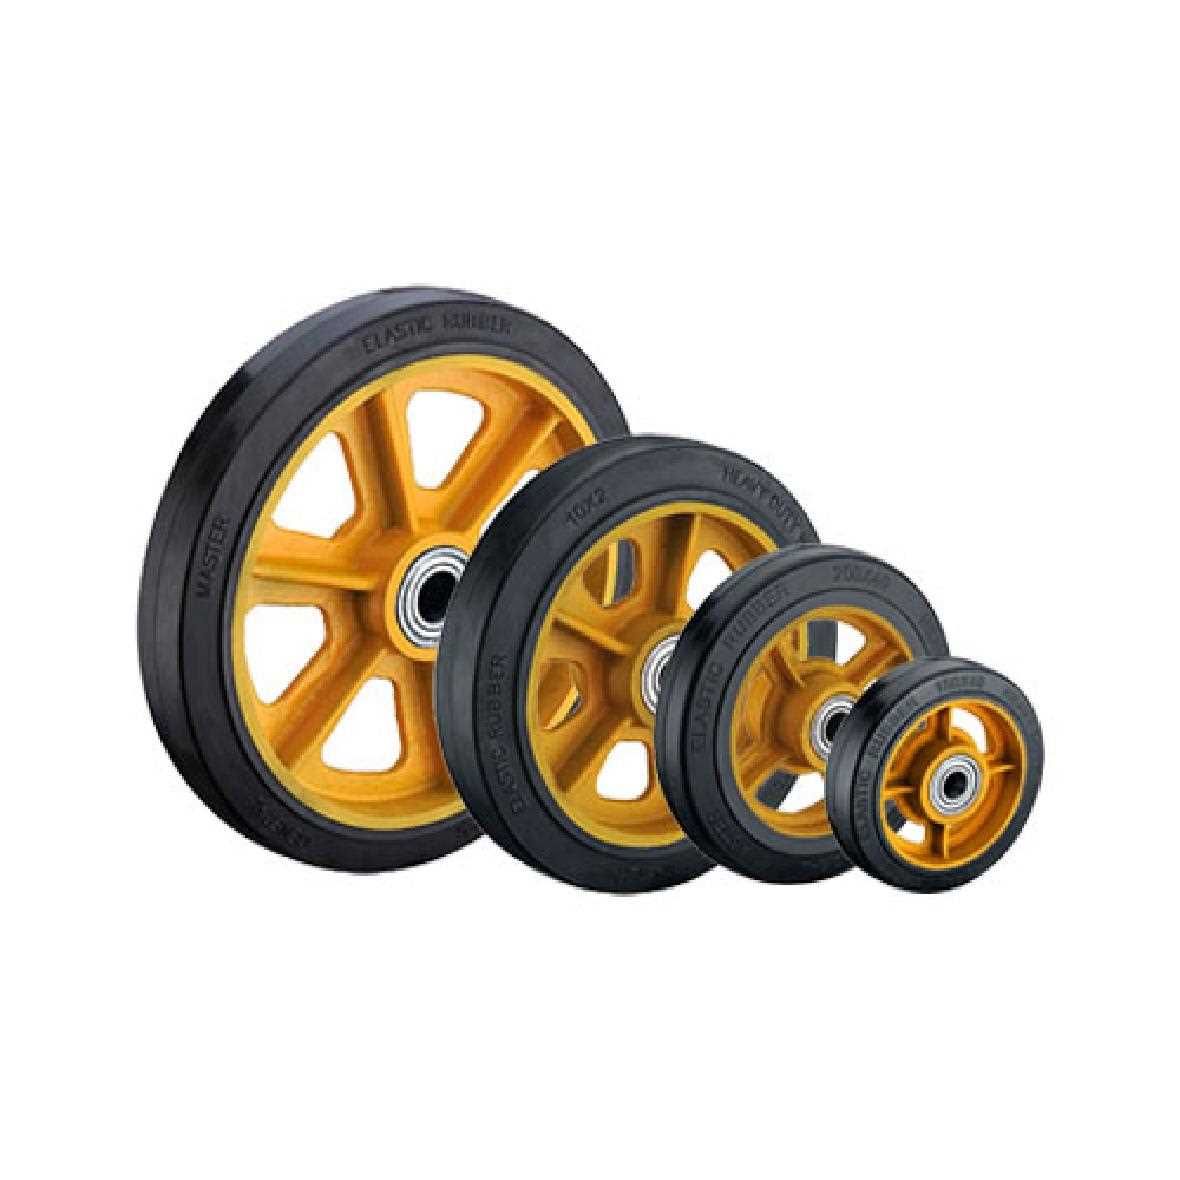 Black Standard Rubber Industry Wheels